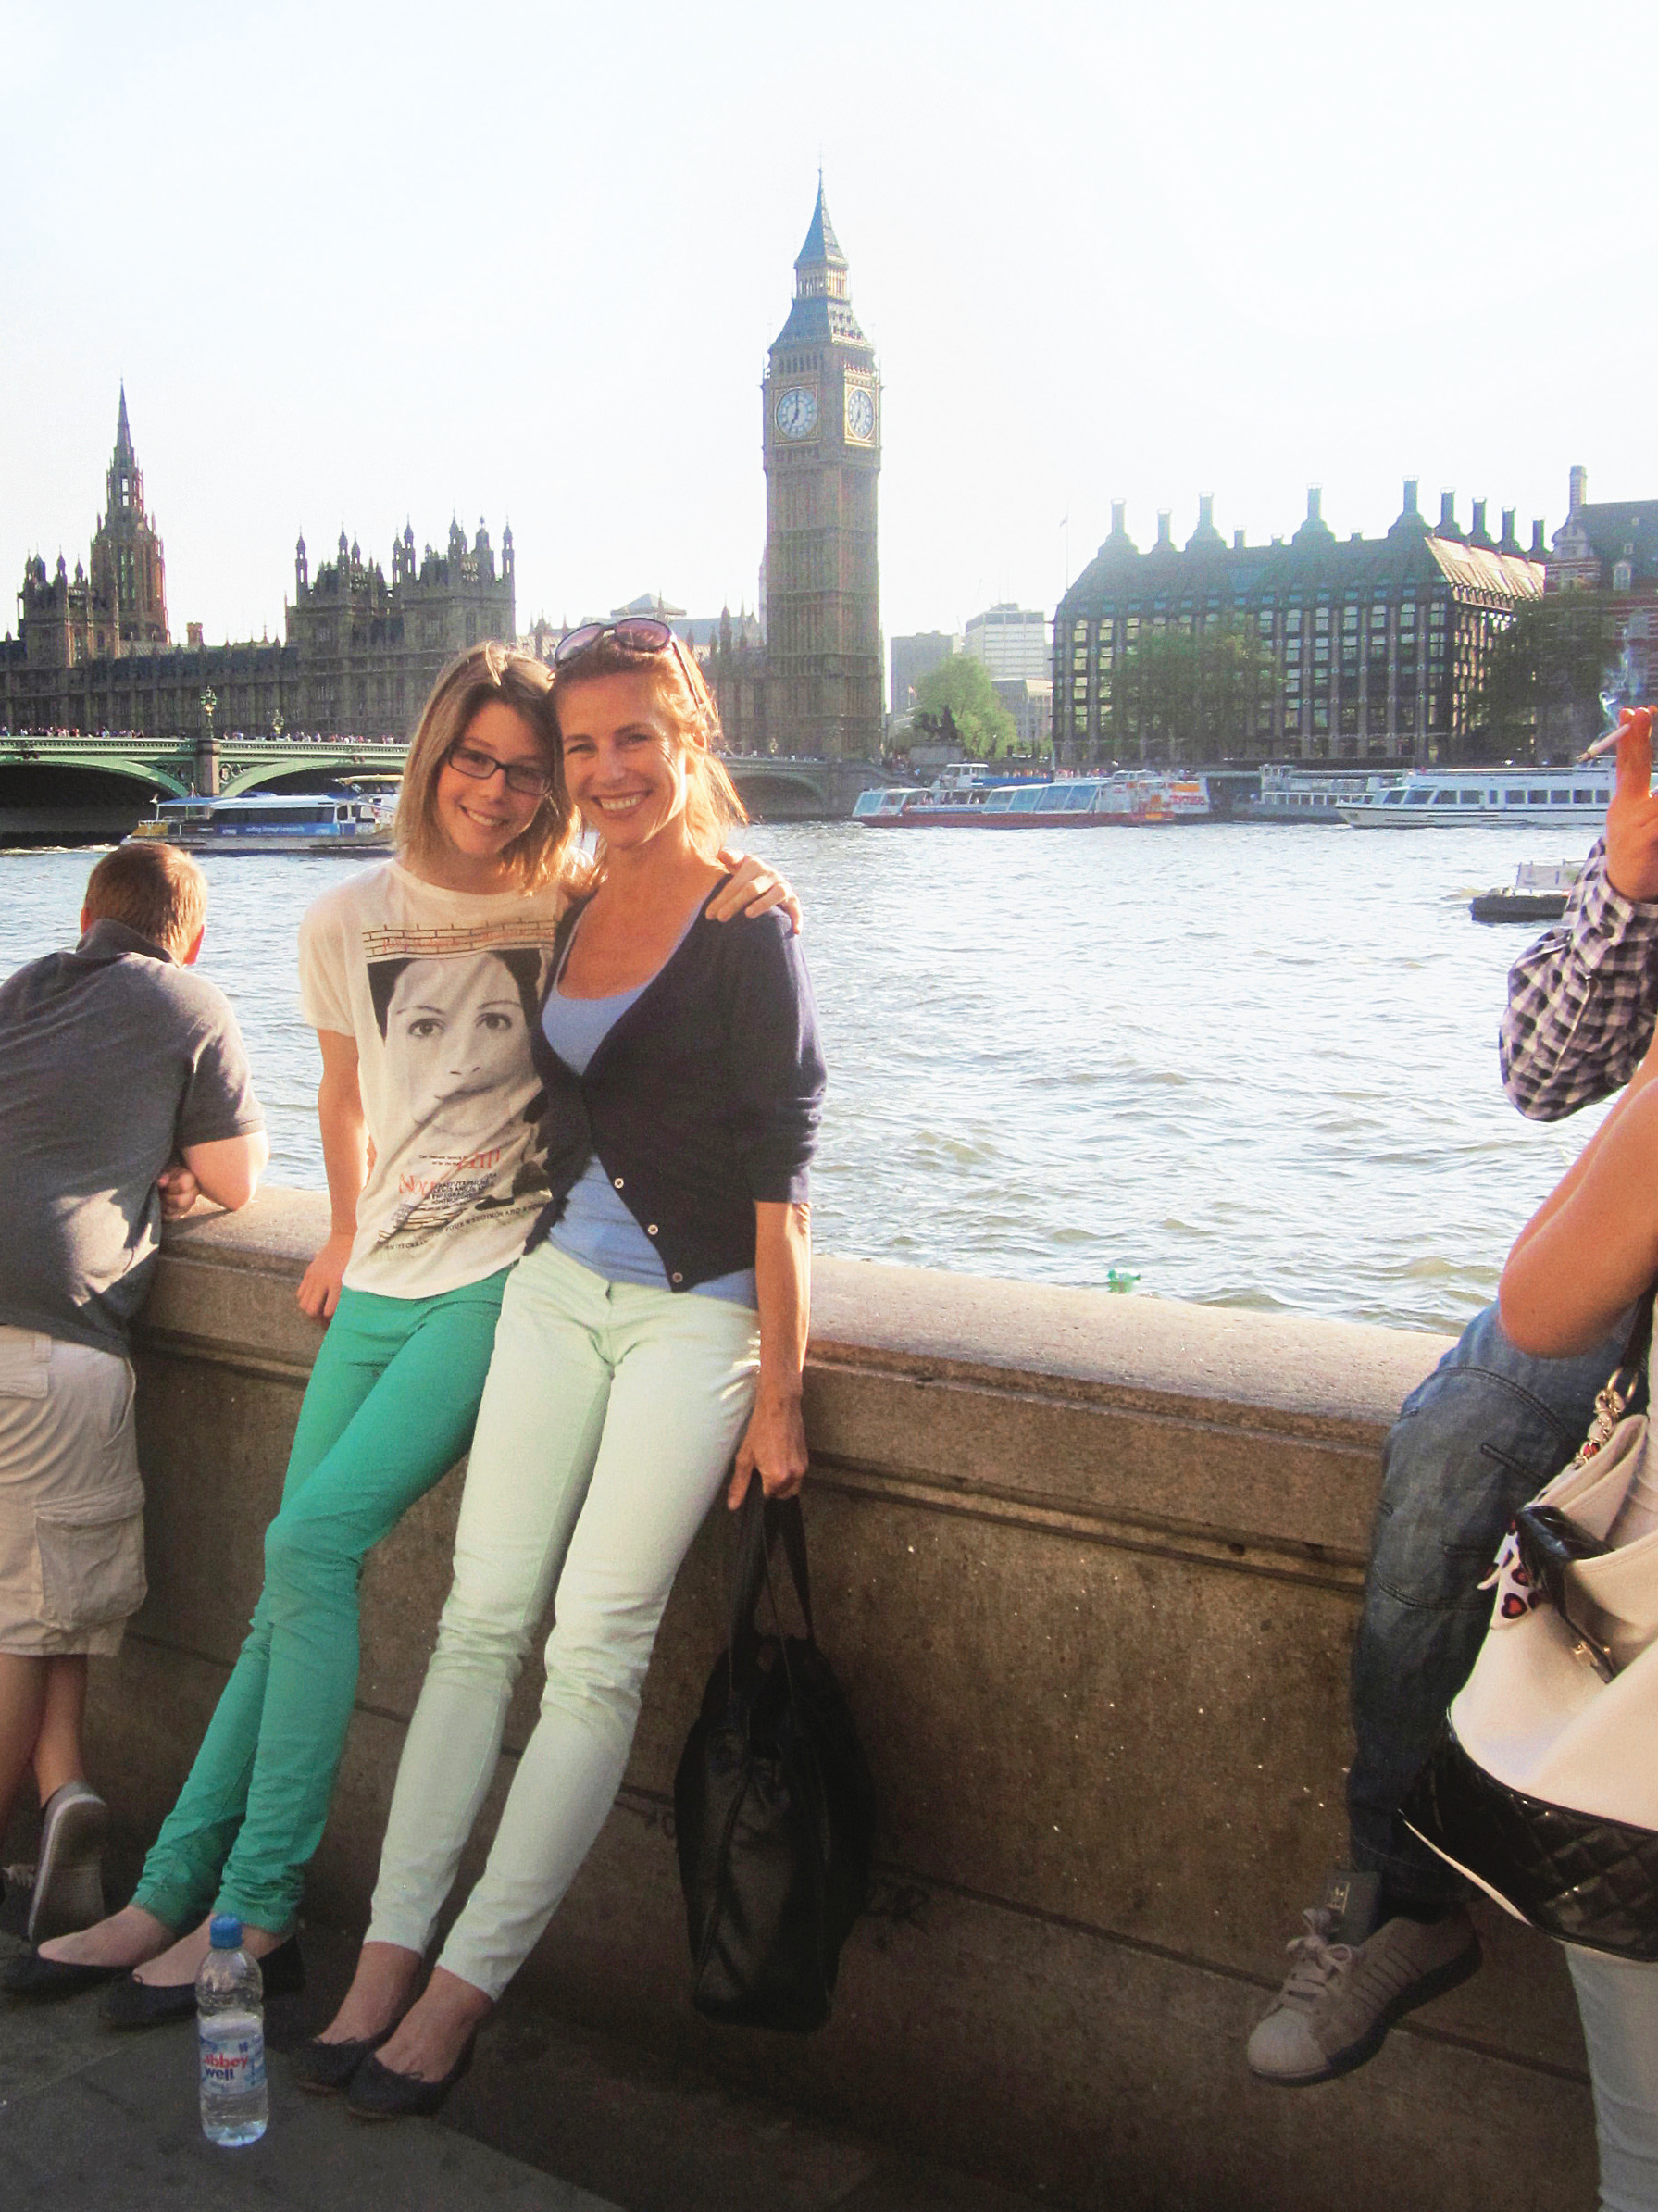 Mutter und Tochter in London mit dem Big Ben, Houses of Parliament und Themse